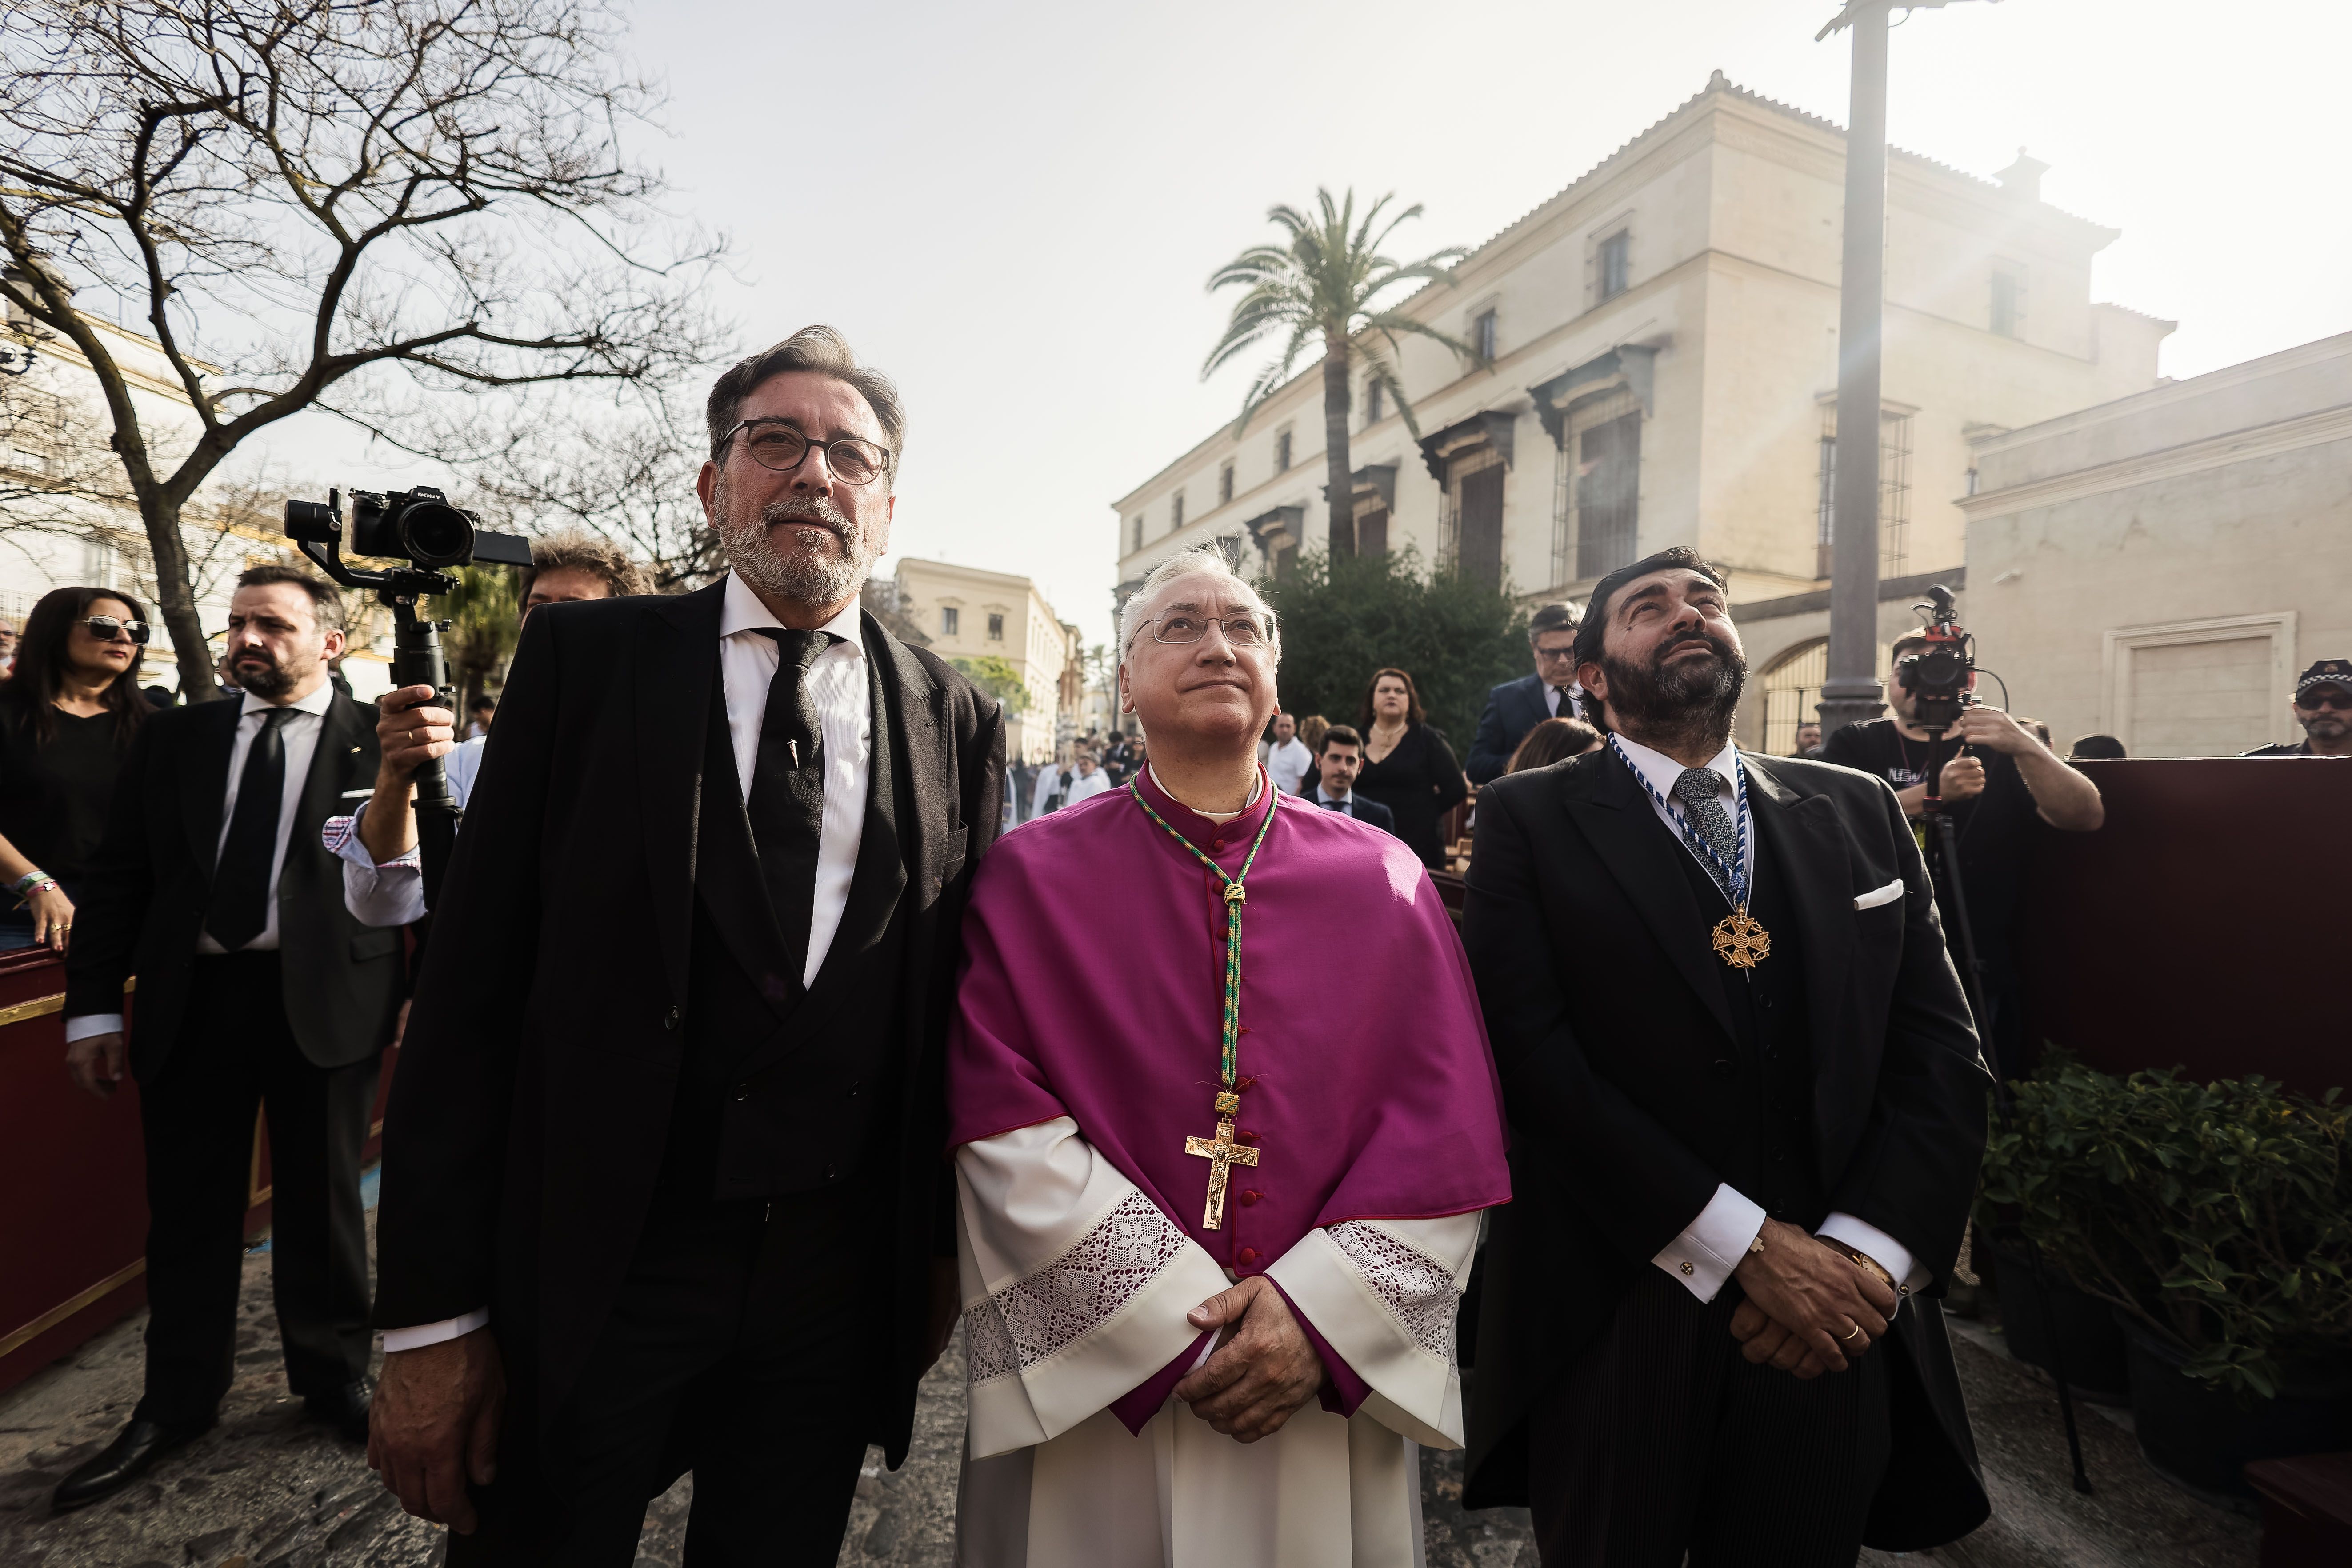  El obispo, el presidente y Martín Gomez ante el paso de La Mortaja el Sábado Santo celebrando su primera entrada en Carrera Oficial.